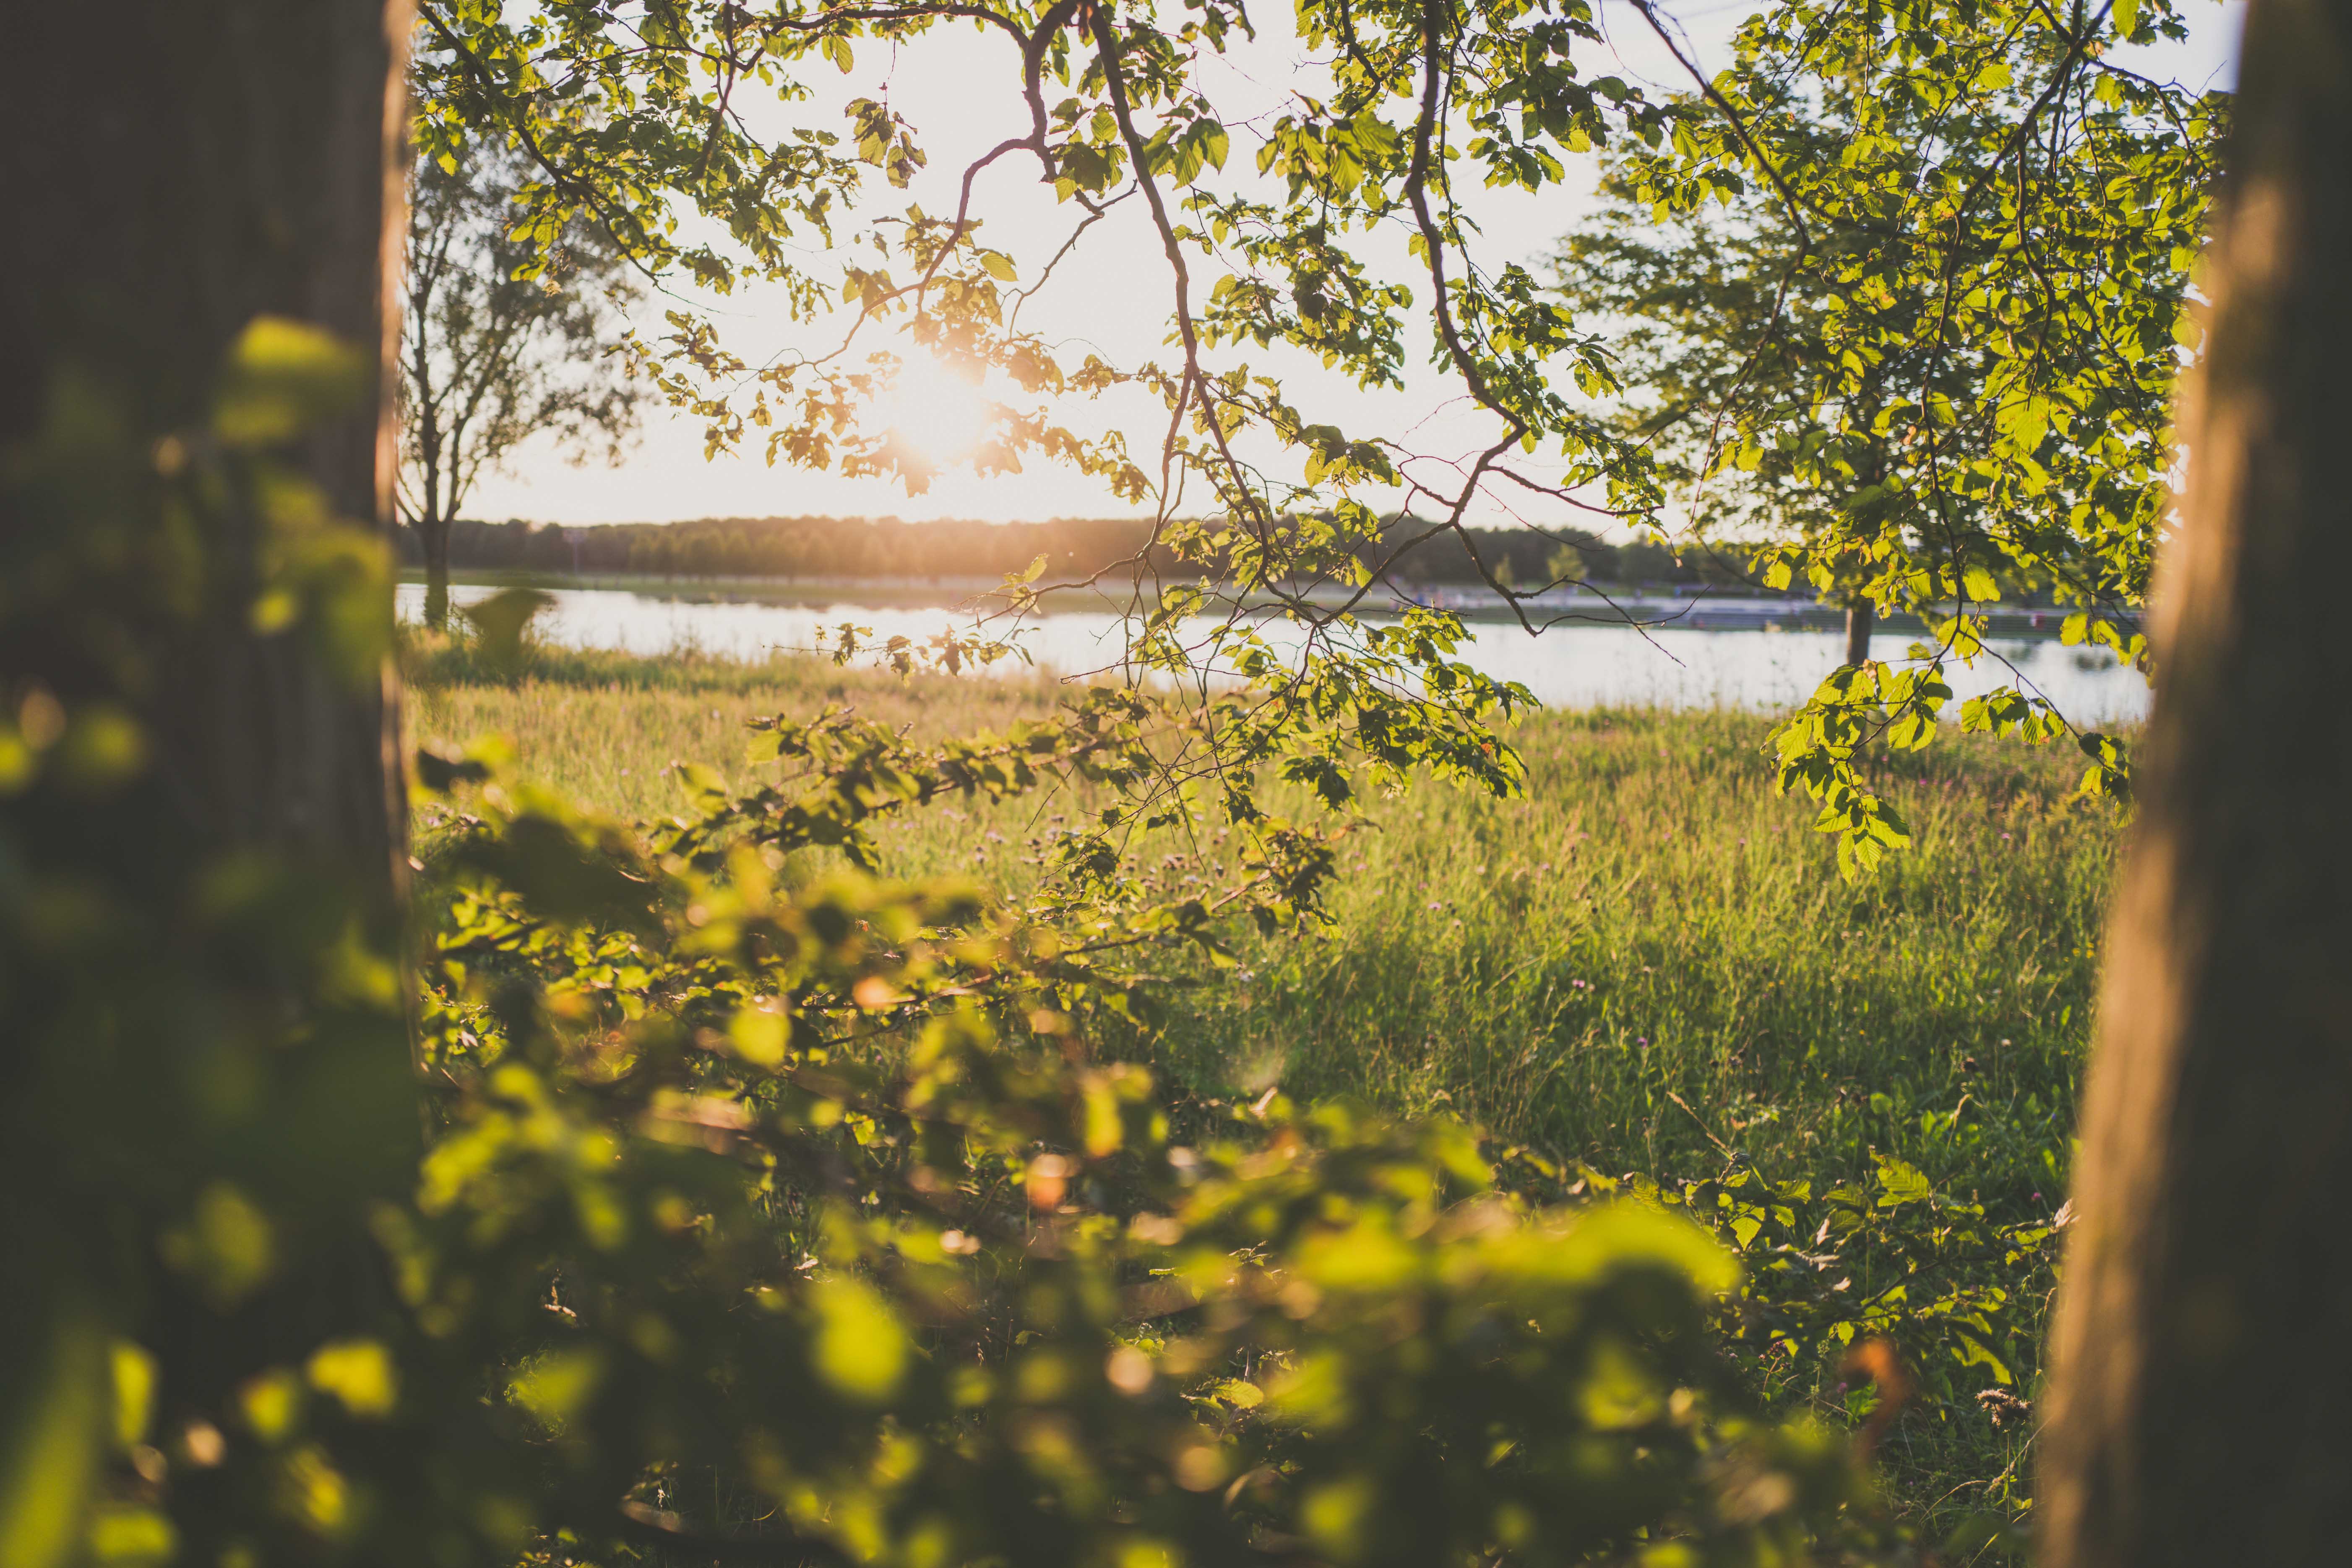 Das Bild zeigt eine schöne Szene eines Sonnenuntergangs über einem See, umgeben von Grün. Das Sonnenlicht scheint durch die Zweige und Blätter der Bäume im Vordergrund und wirft dabei Licht auf das Gras darunter. Das Gras ist üppig und grün, warm von der untergehenden Sonne beleuchtet. Im Hintergrund spiegeln sich die ruhigen Gewässer eines Sees in den goldenen Farben des Sonnenuntergangs.